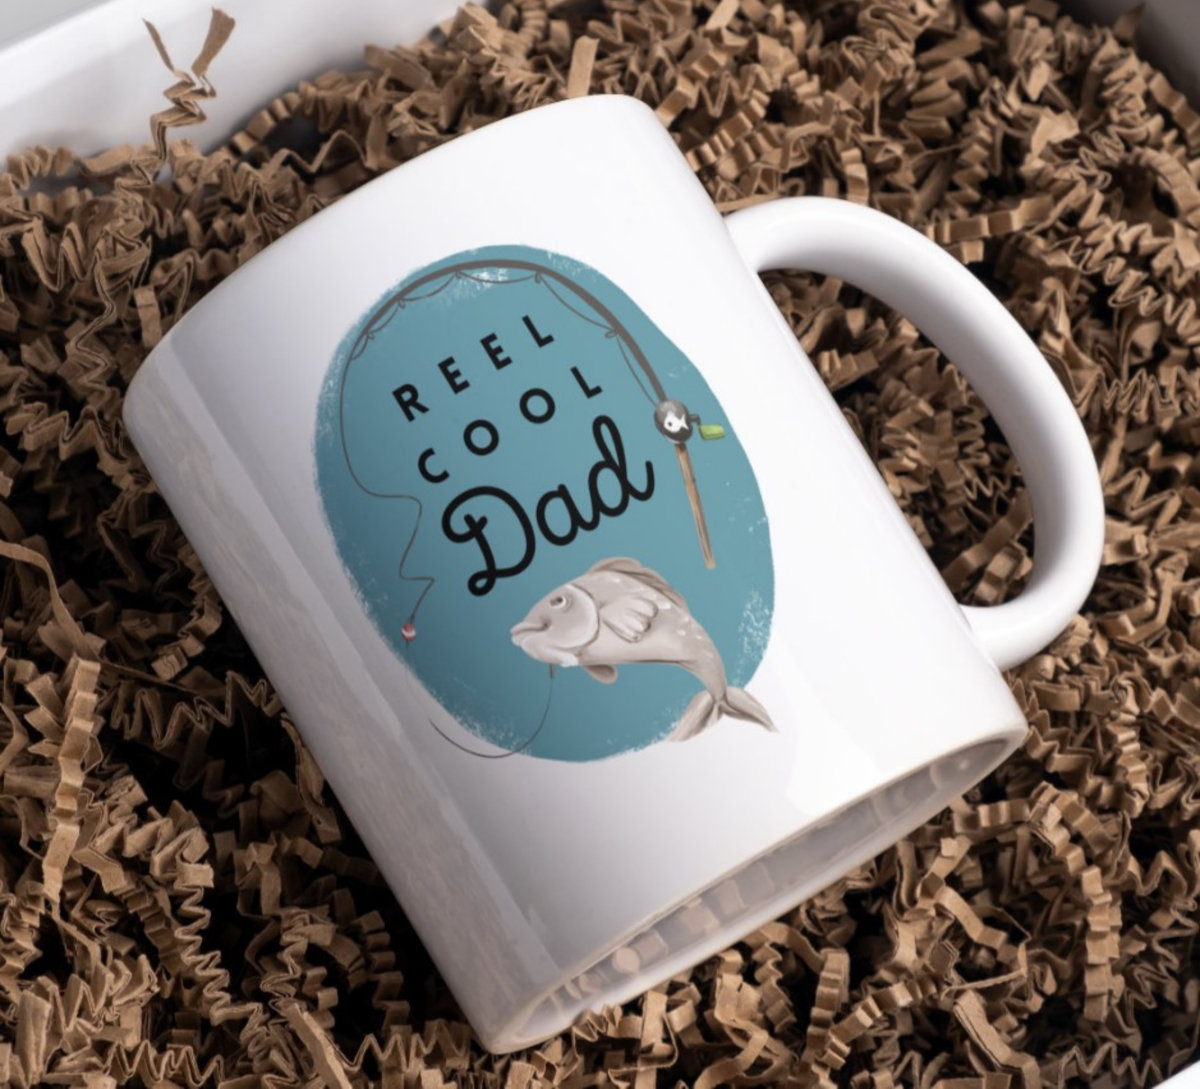 Fathers day mug designs, fishing mug designs, funny mug